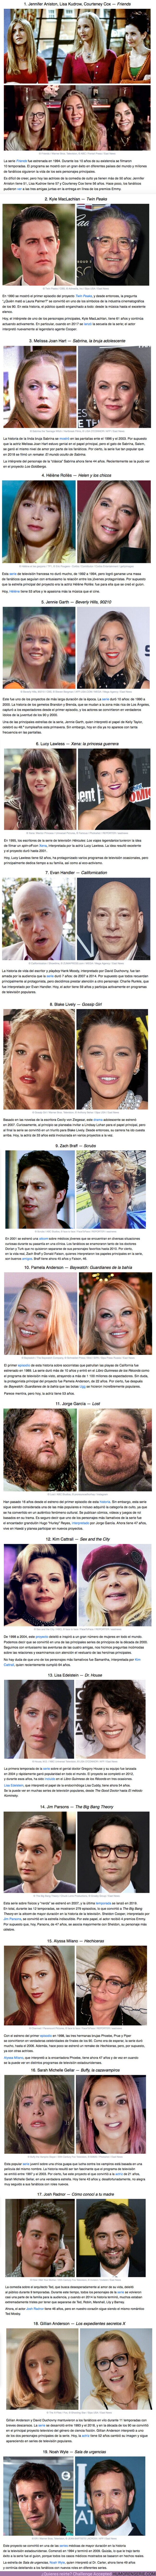 59568 - GALERÍA: Mira cómo han cambiado 19 actores y actrices de las icónicas series de televisión de los 90 y 2000